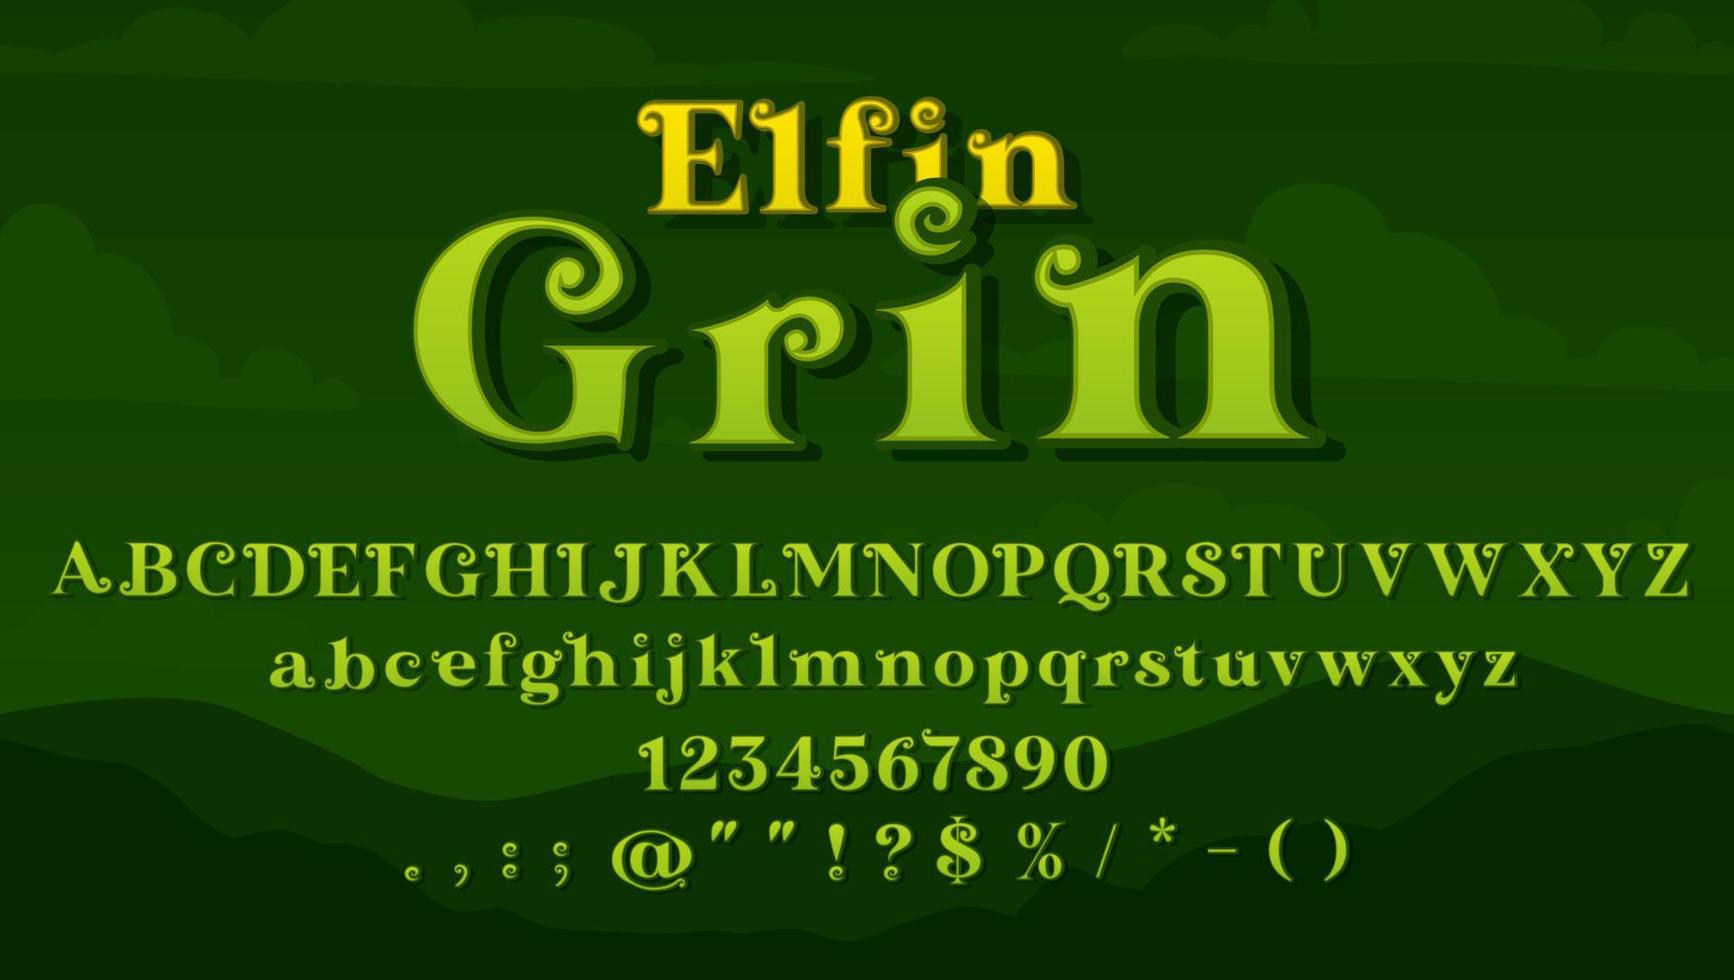 magie lettertype, middeleeuws lettertype of fee verhaal type vector